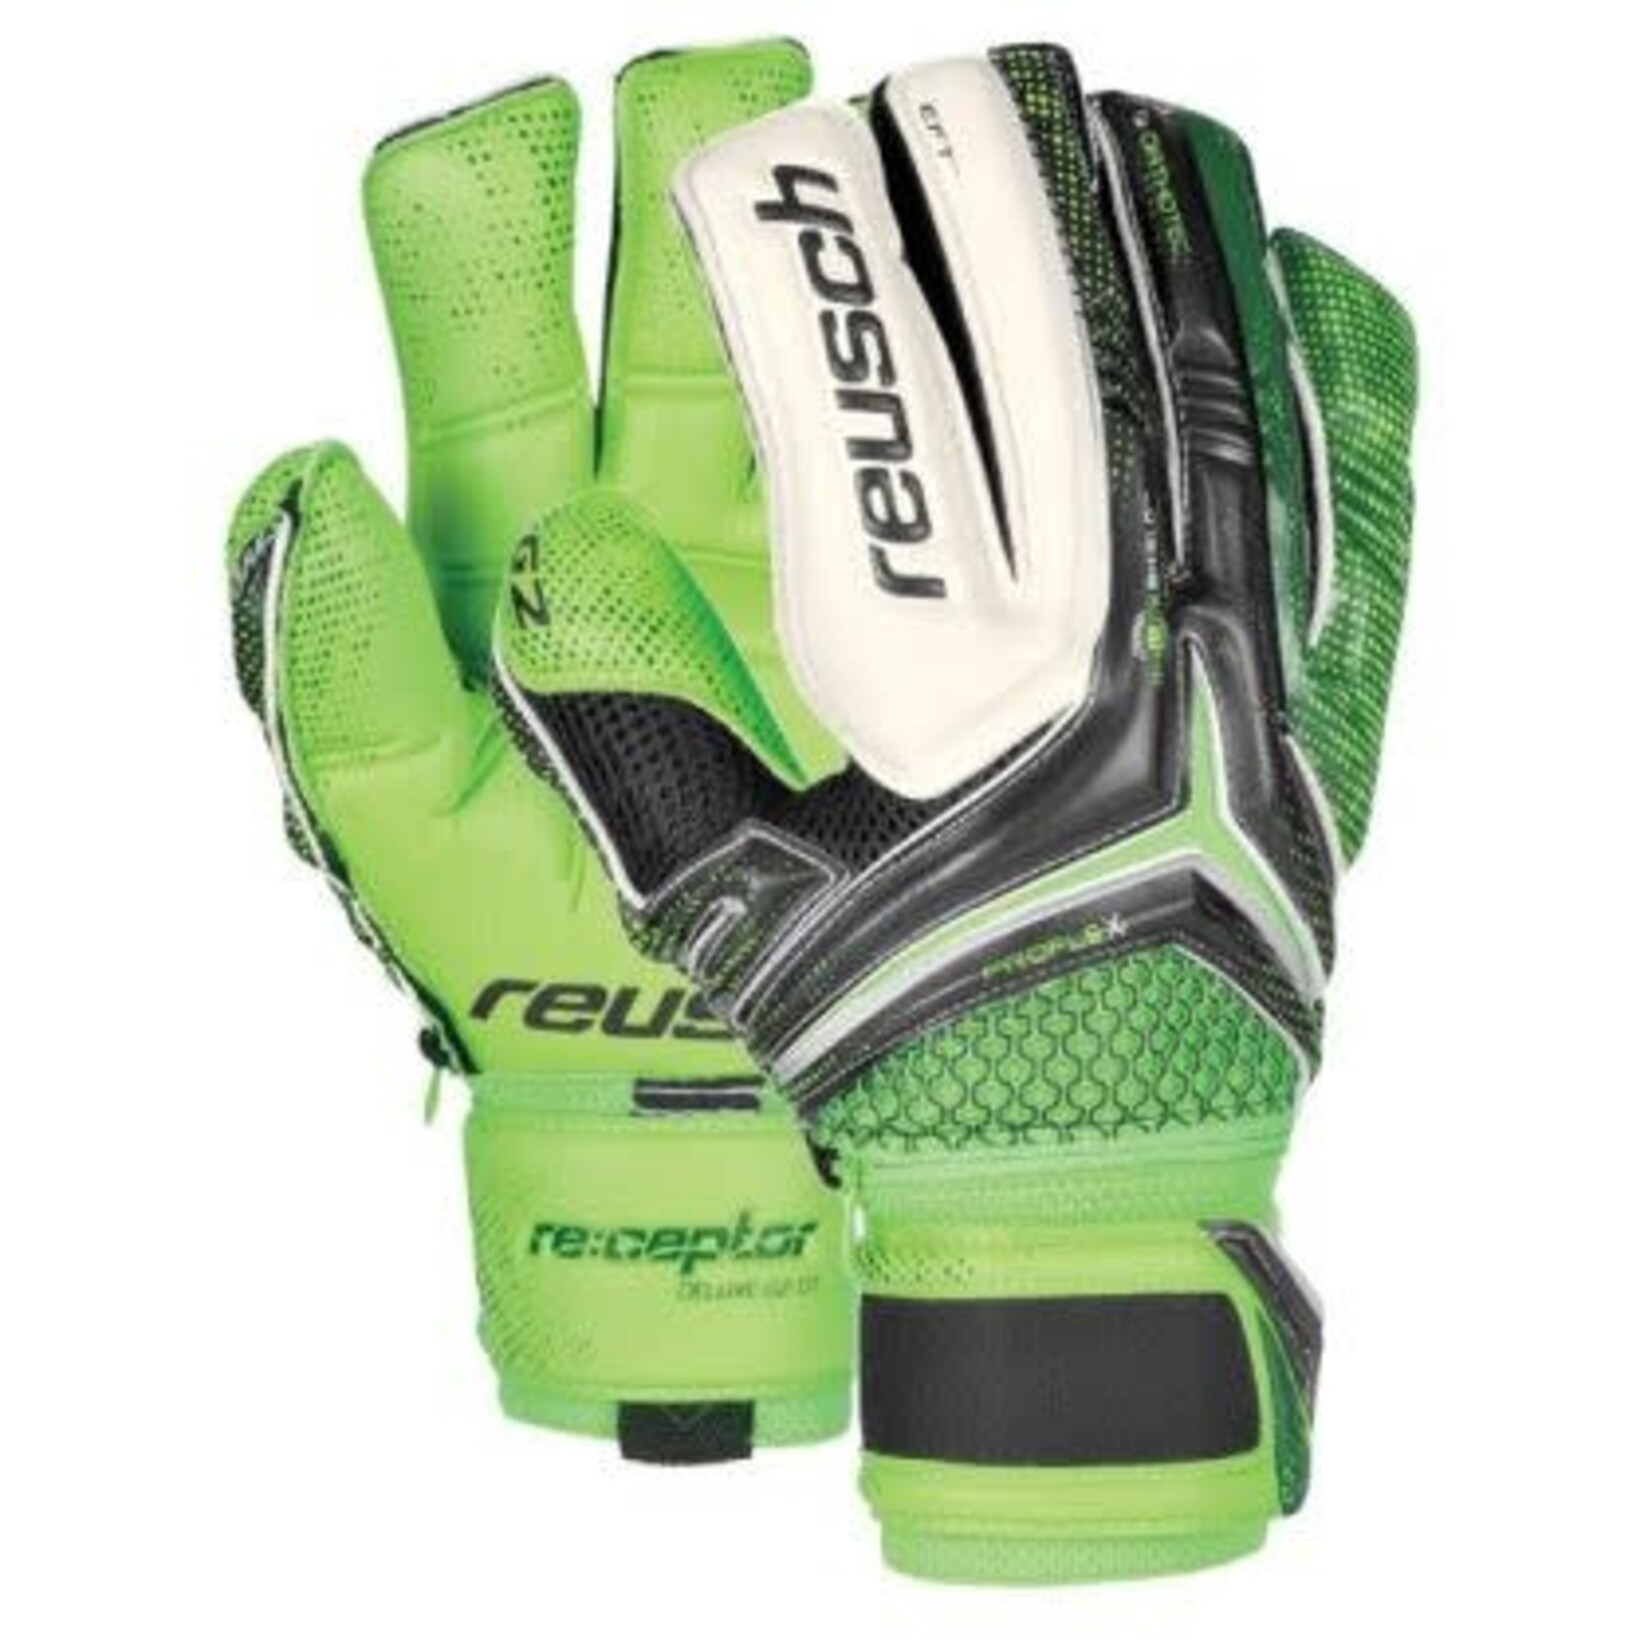 Reusch Re:ceptor Deluxe G2 Goalkeeper Gloves Black/Dark Green/Green Gecko